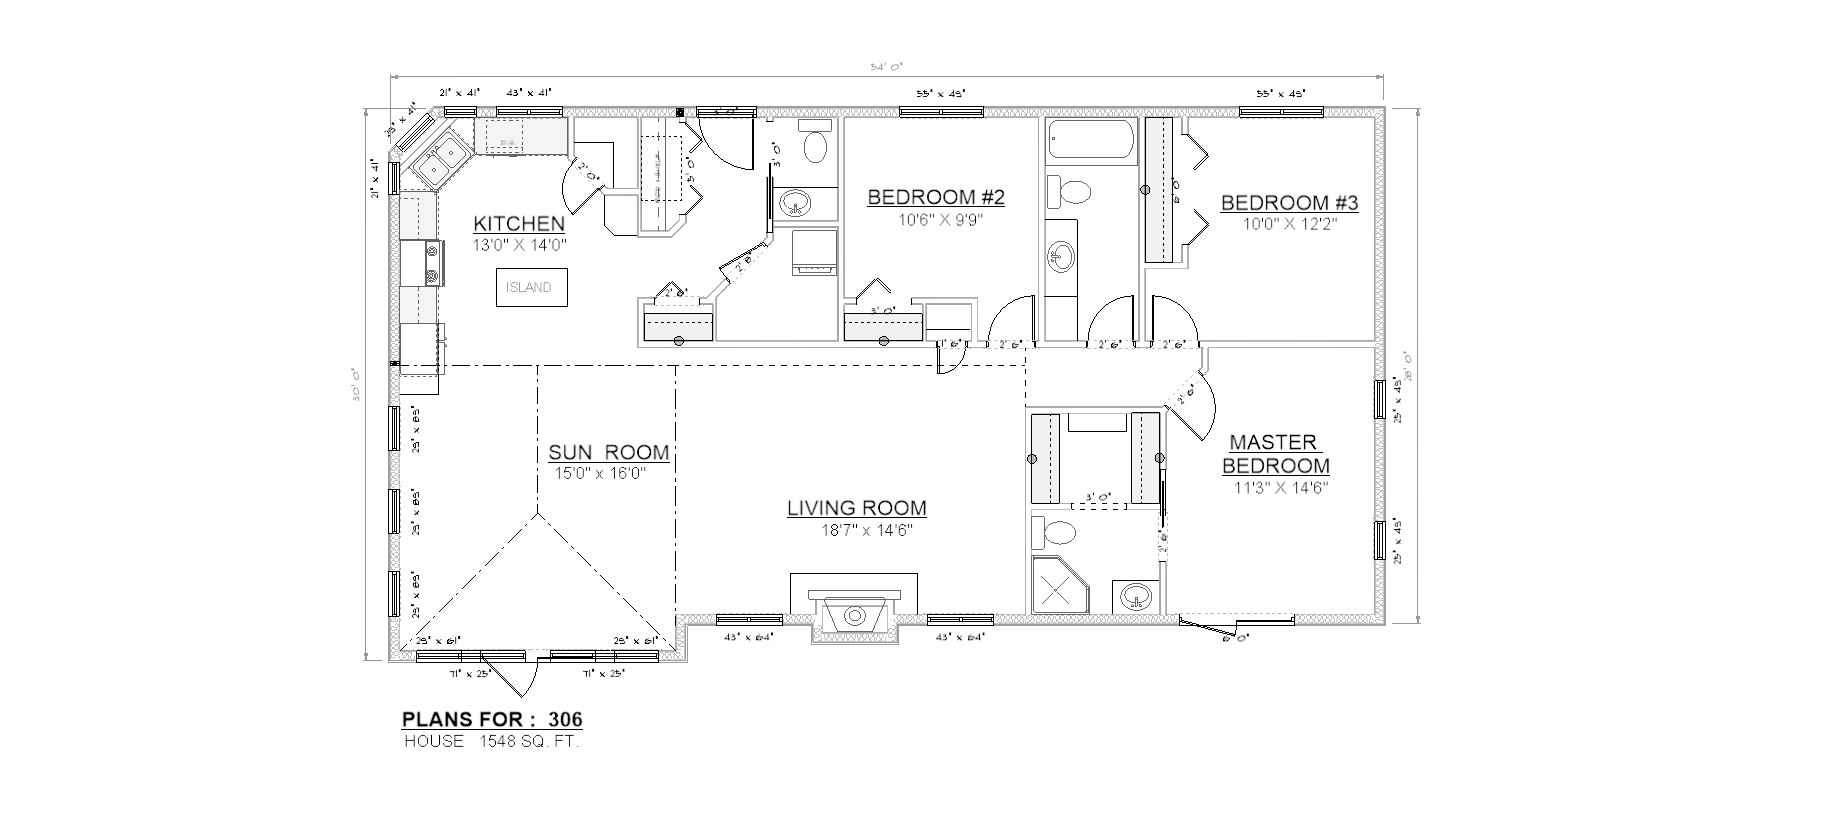 Penner Homes Floor Plan Id: 306